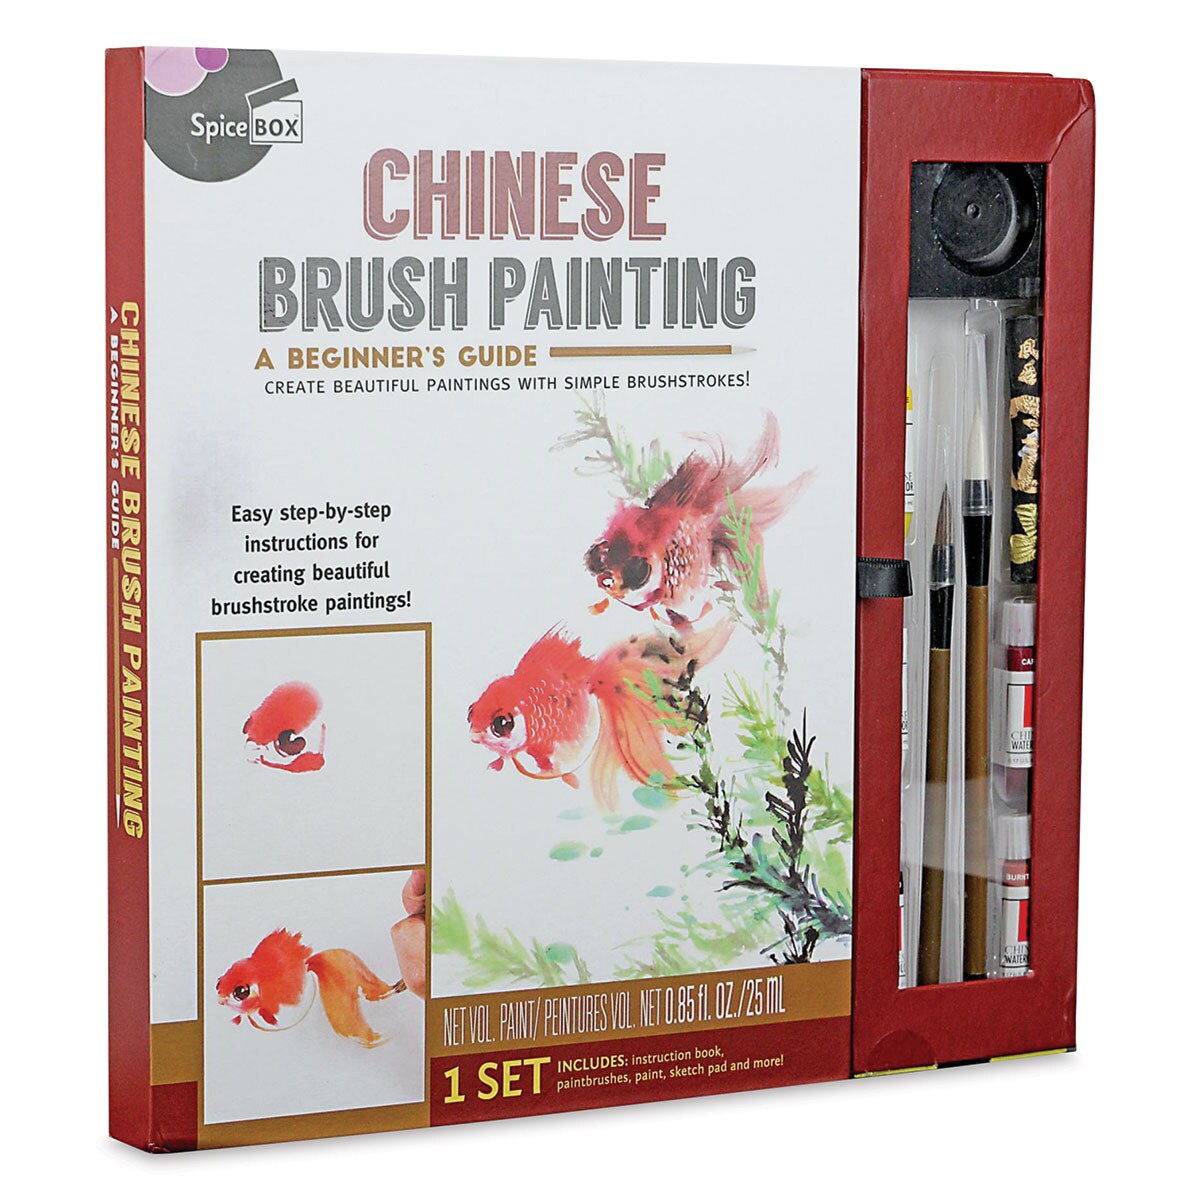 SpiceBox Master Class Chinese Brush Painting Kit